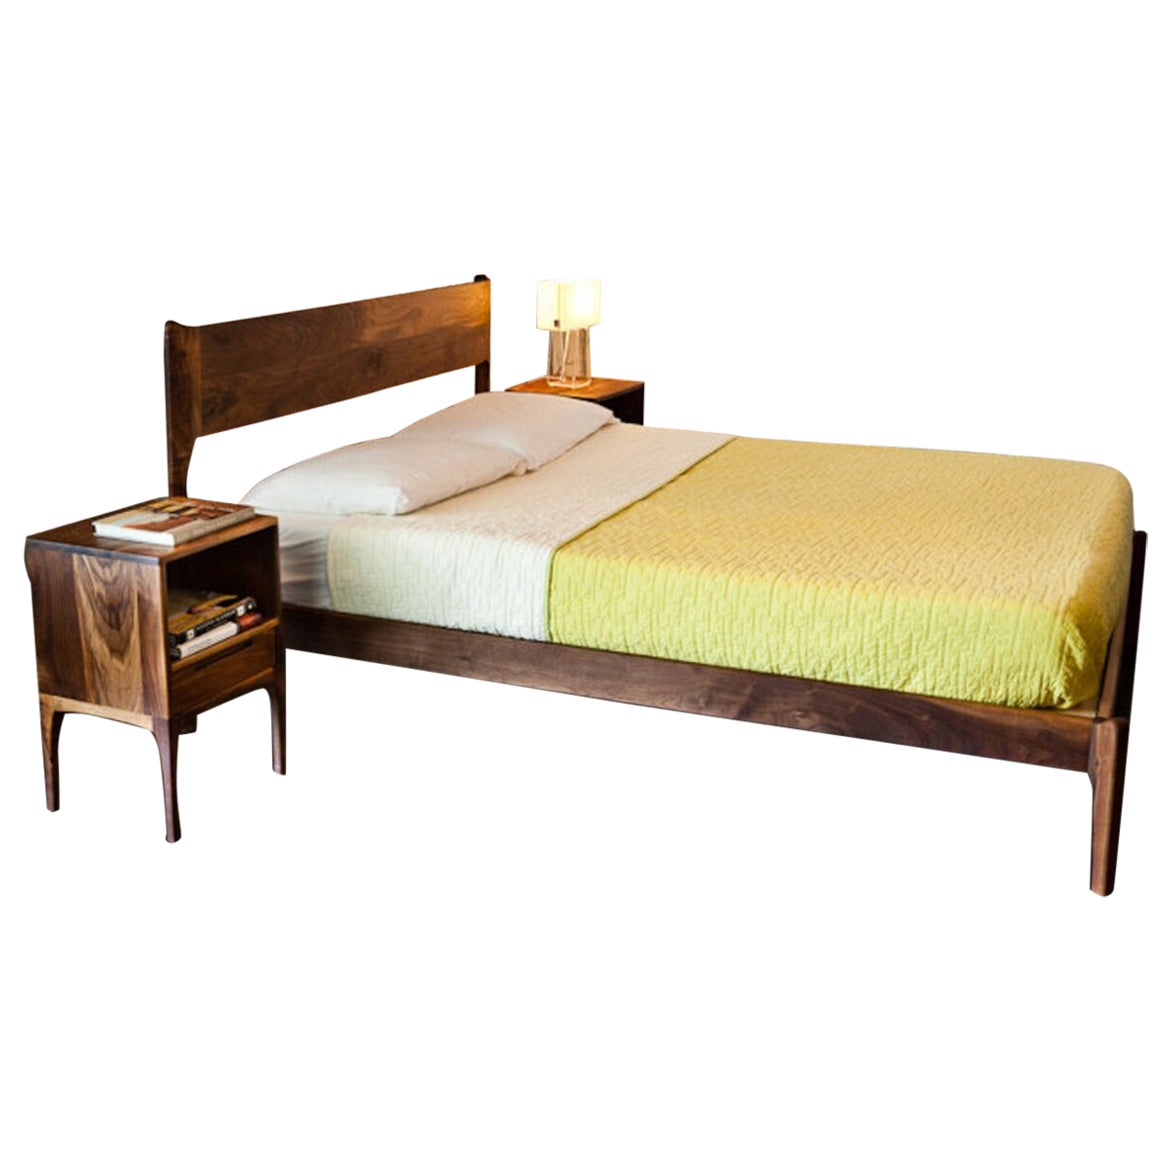 Deeble Classic Modern Bed & Nightstand Set, Midcentury Walnut Minimalist Queen